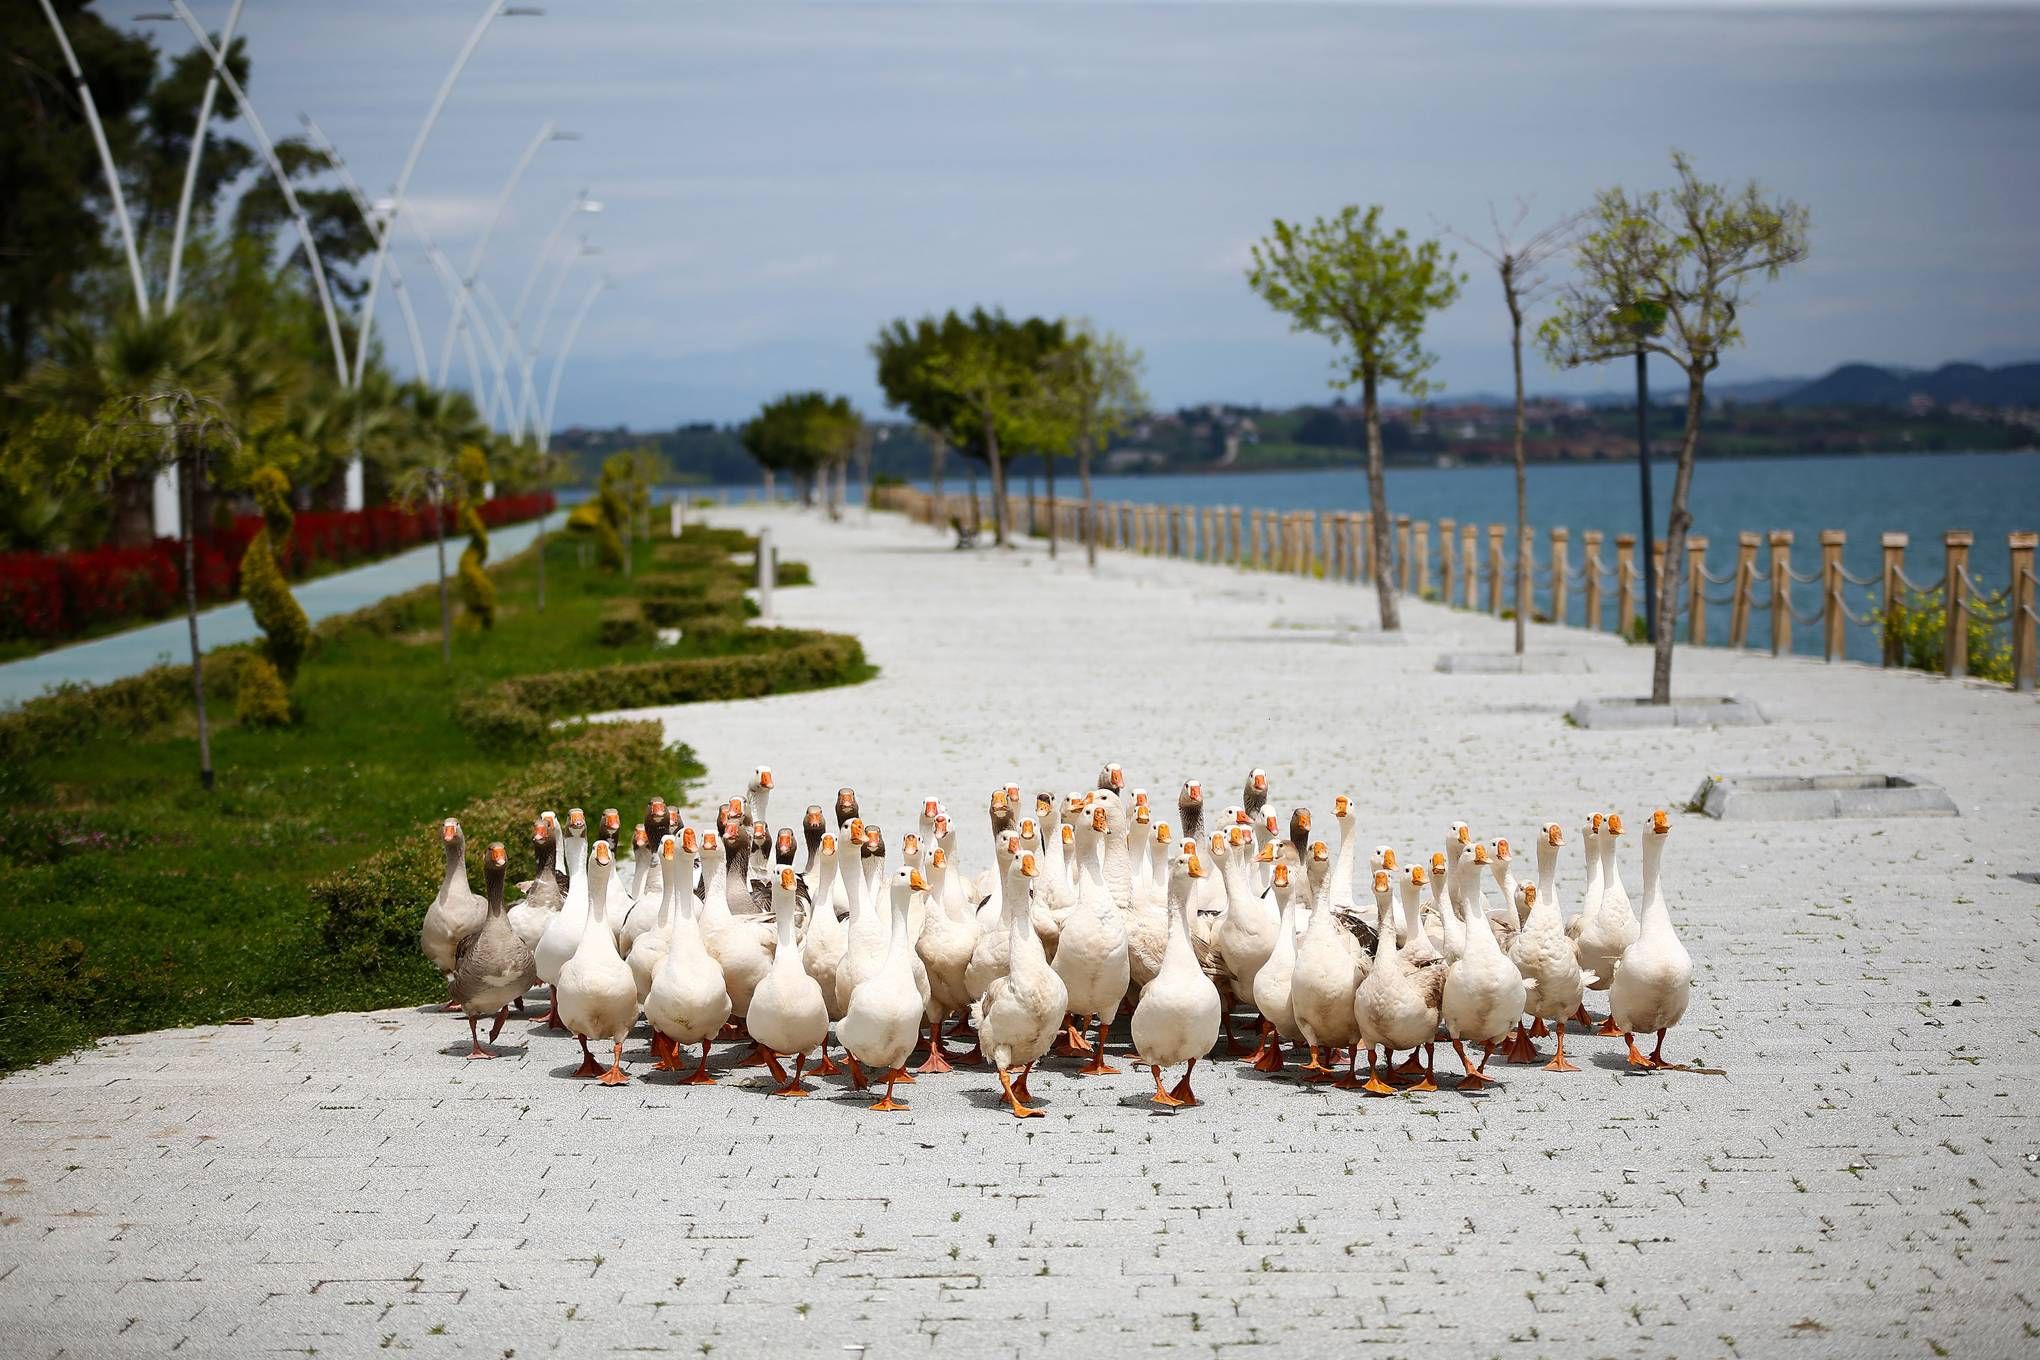 Ducks taking over street